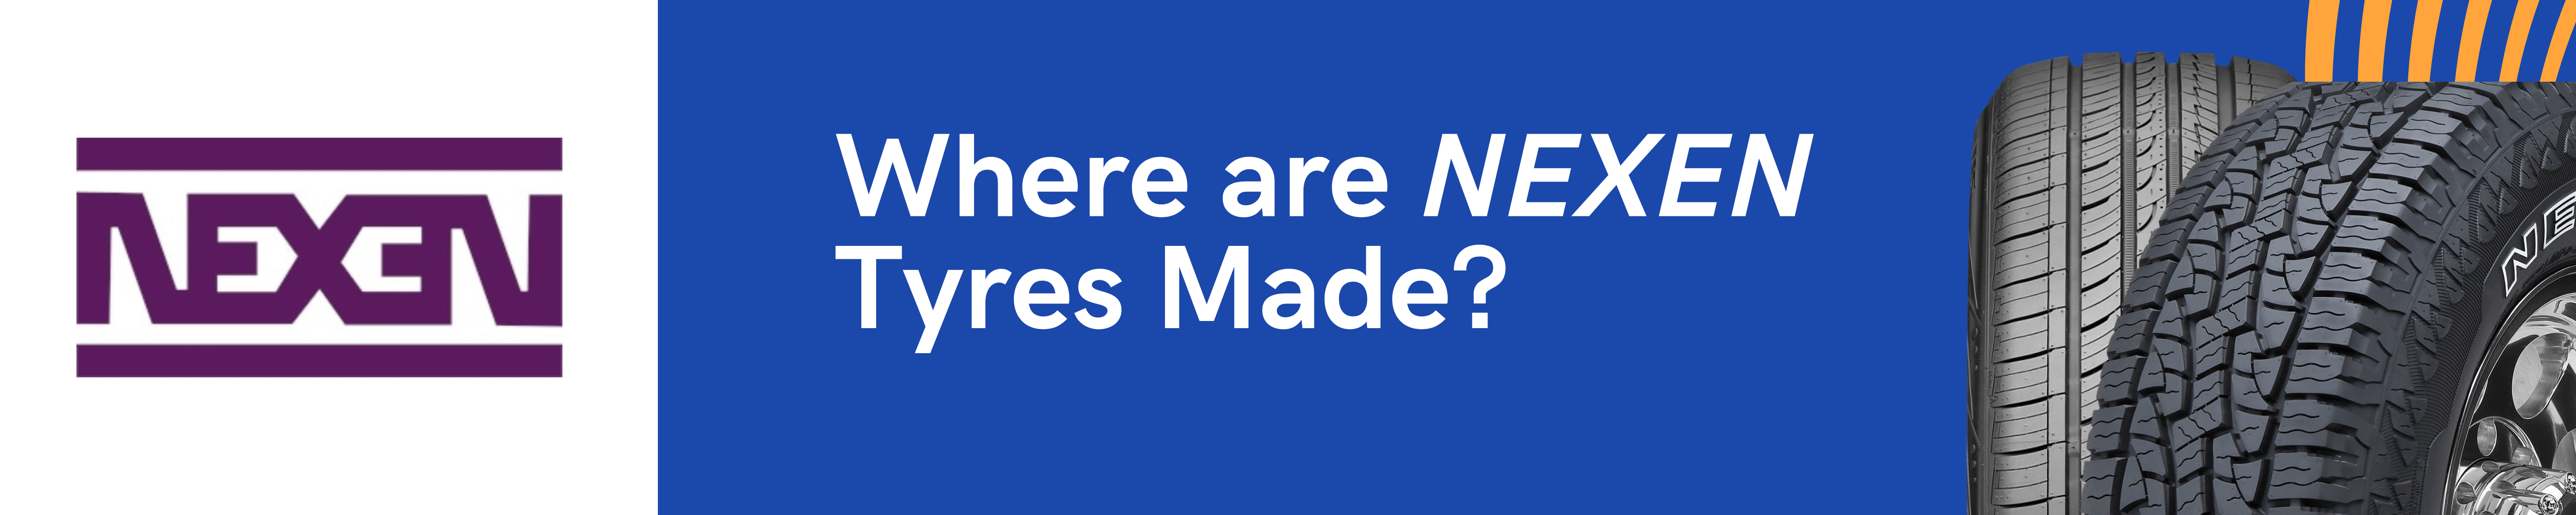 Where are Nexen Tyres Made?